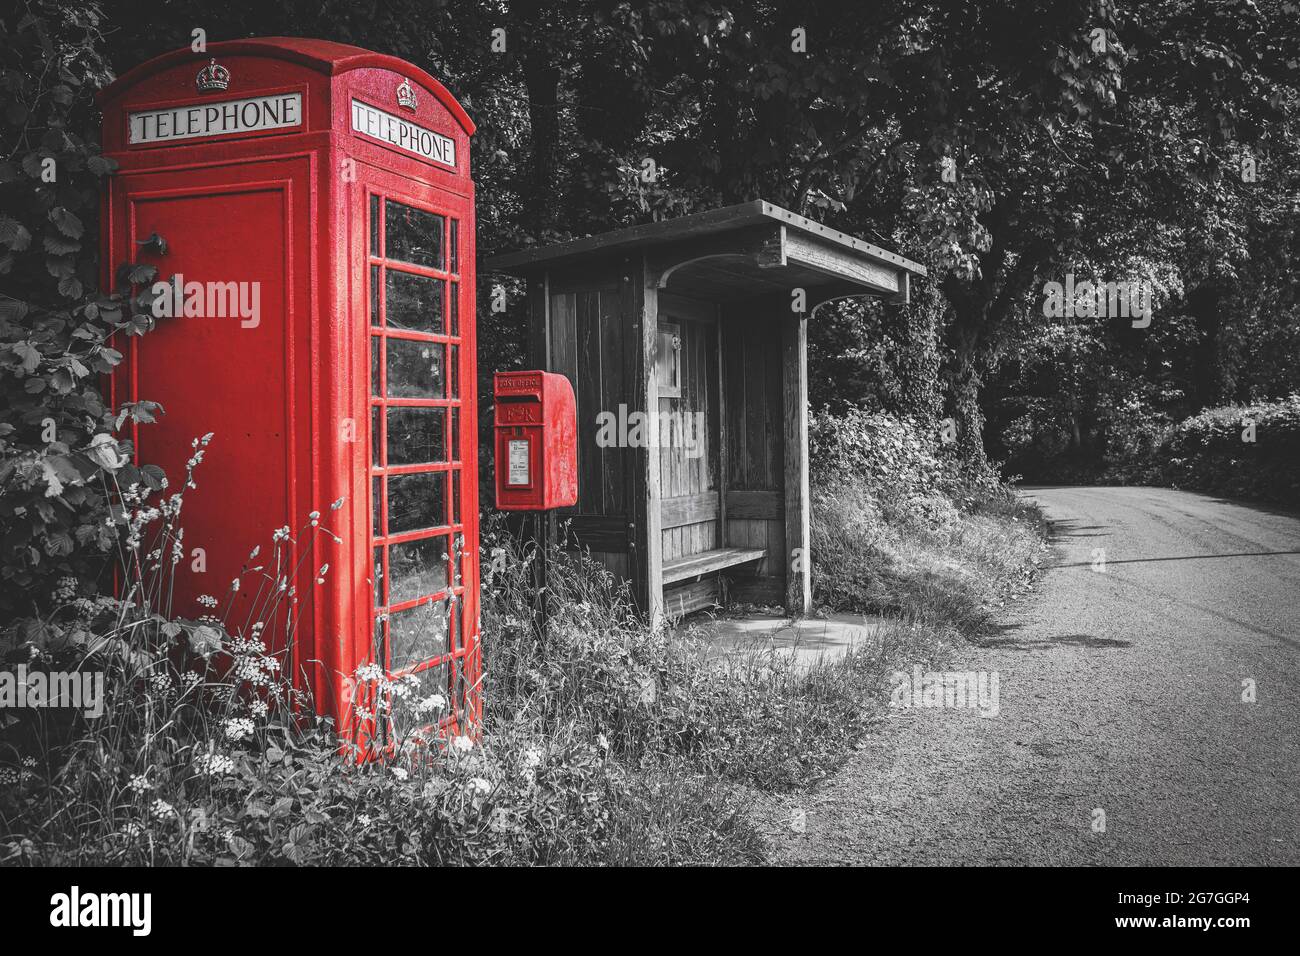 Traditionelle rote britische Telefonzelle, Briefkasten und hölzerne Bushaltestelle, selektive Farbe auf schwarzem und weißem Hintergrund, keine Menschen. Wales, Großbritannien Stockfoto